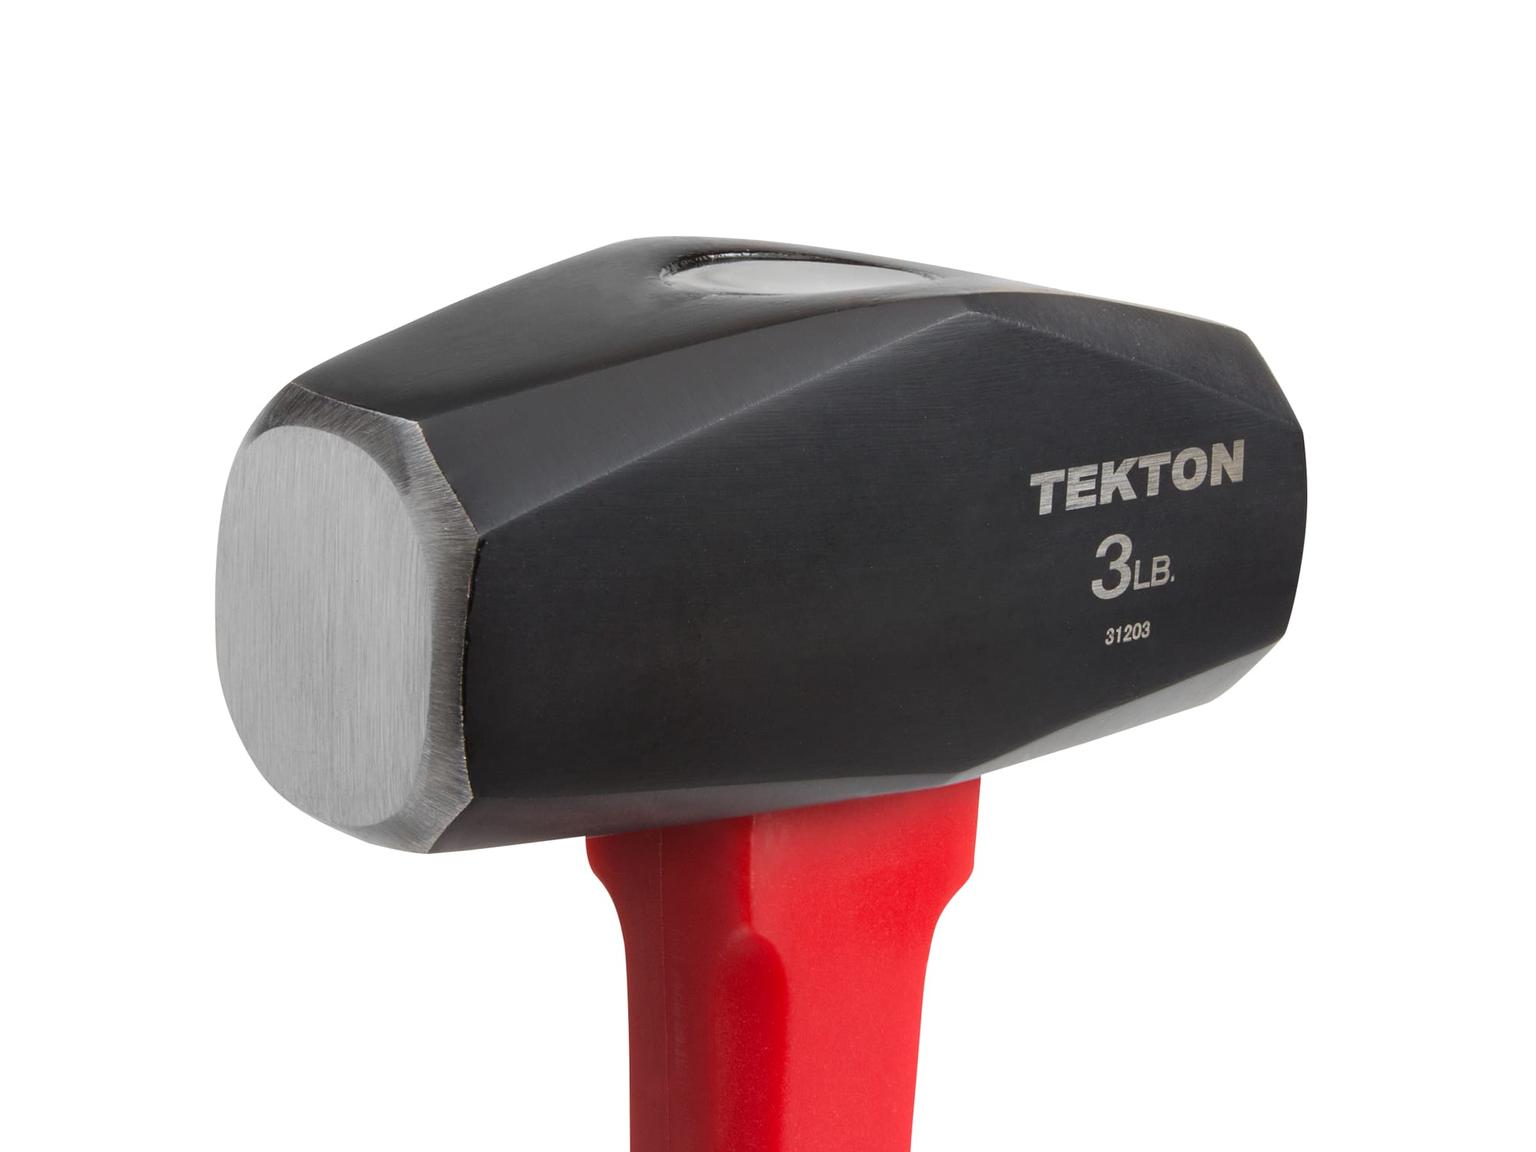 TEKTON 31203 3 lb. Drilling Hammer